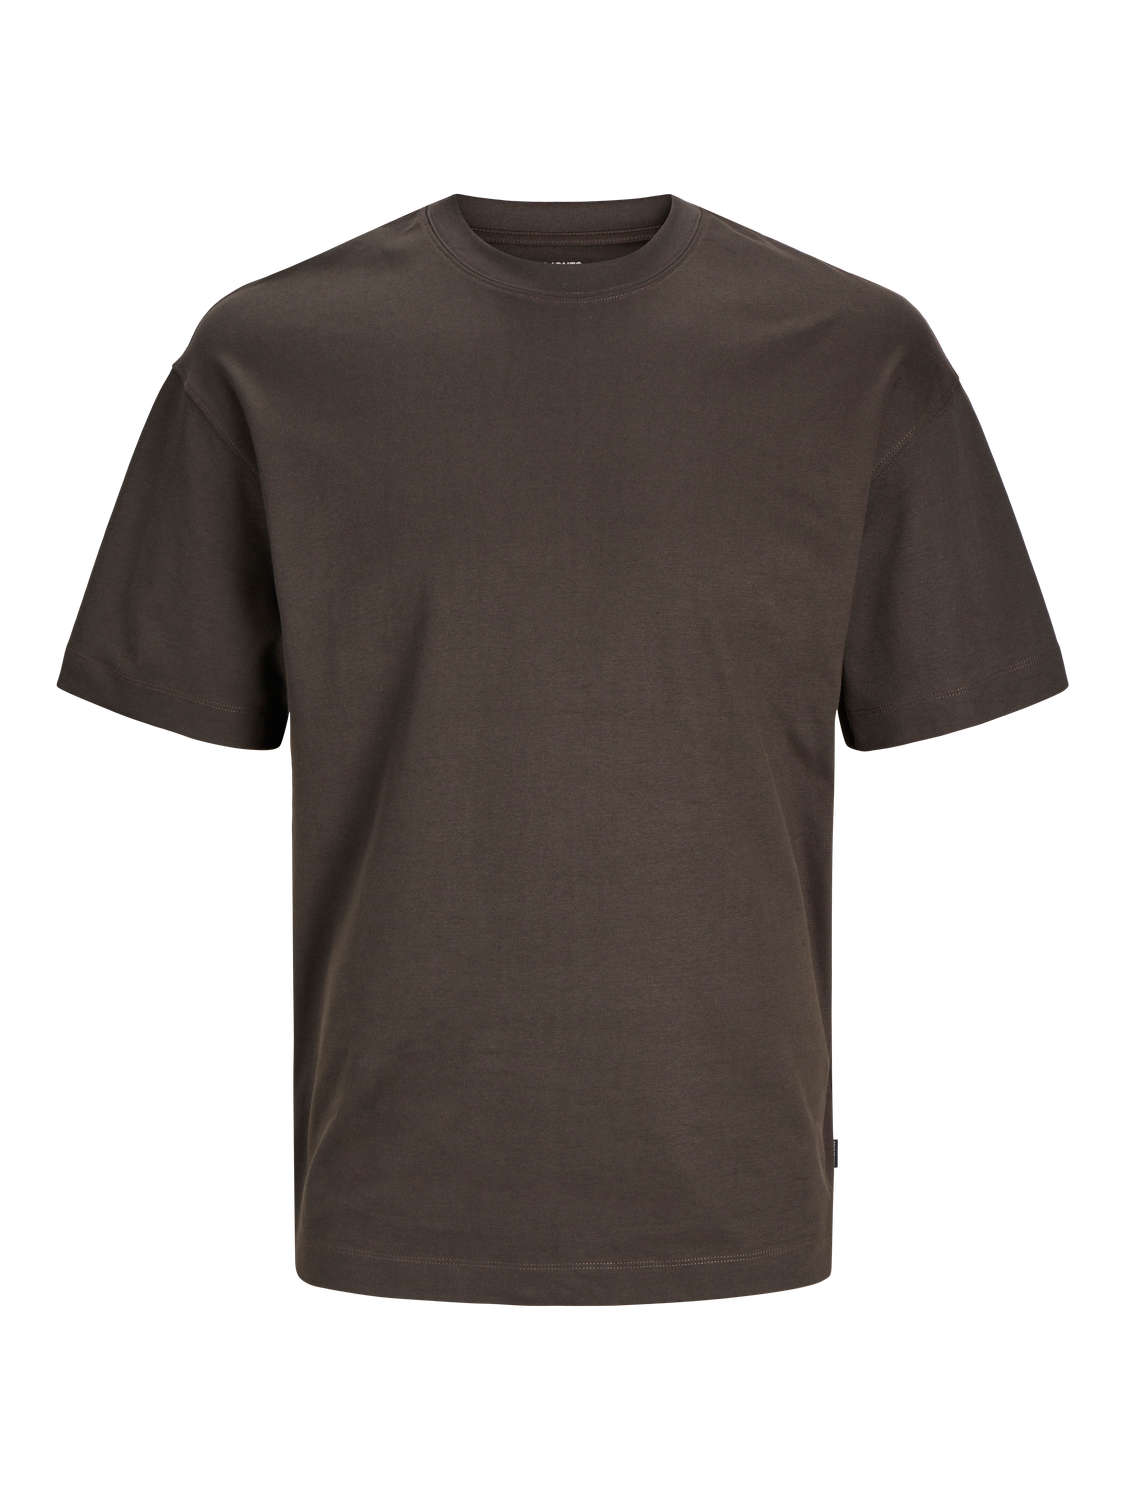 Jack & Jones Yksivärinen Pyöreä pääntie T-paita -Mulch - 12254412